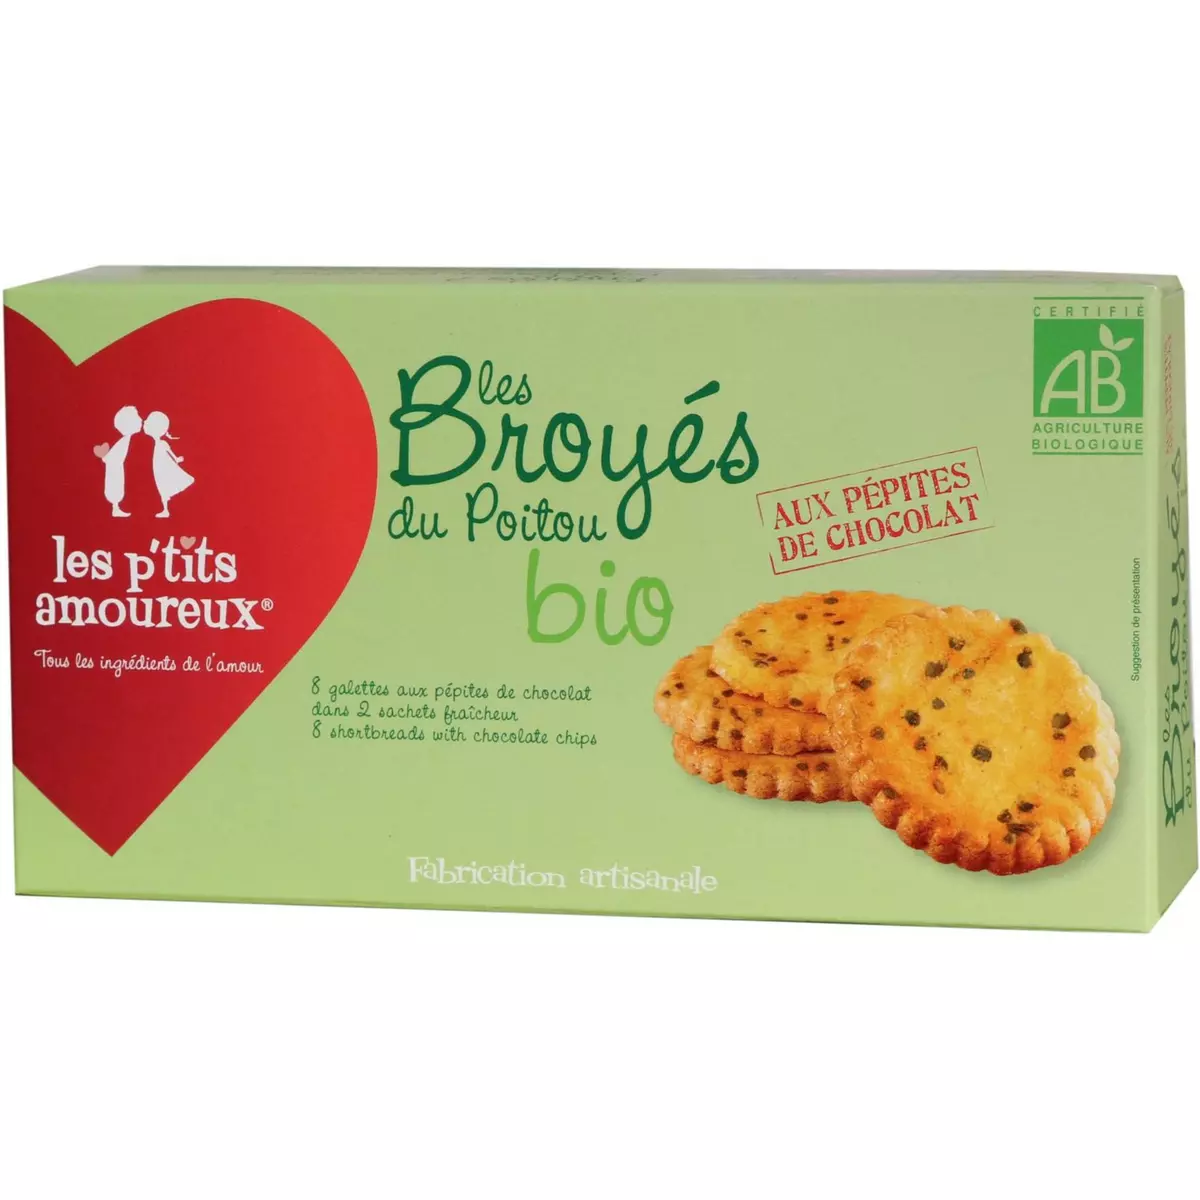 LES P'TITS AMOUREUX Les broyés du Poitou biscuits bio pépites de chocolat, sachets fraîcheur 2x4 biscuits 150g